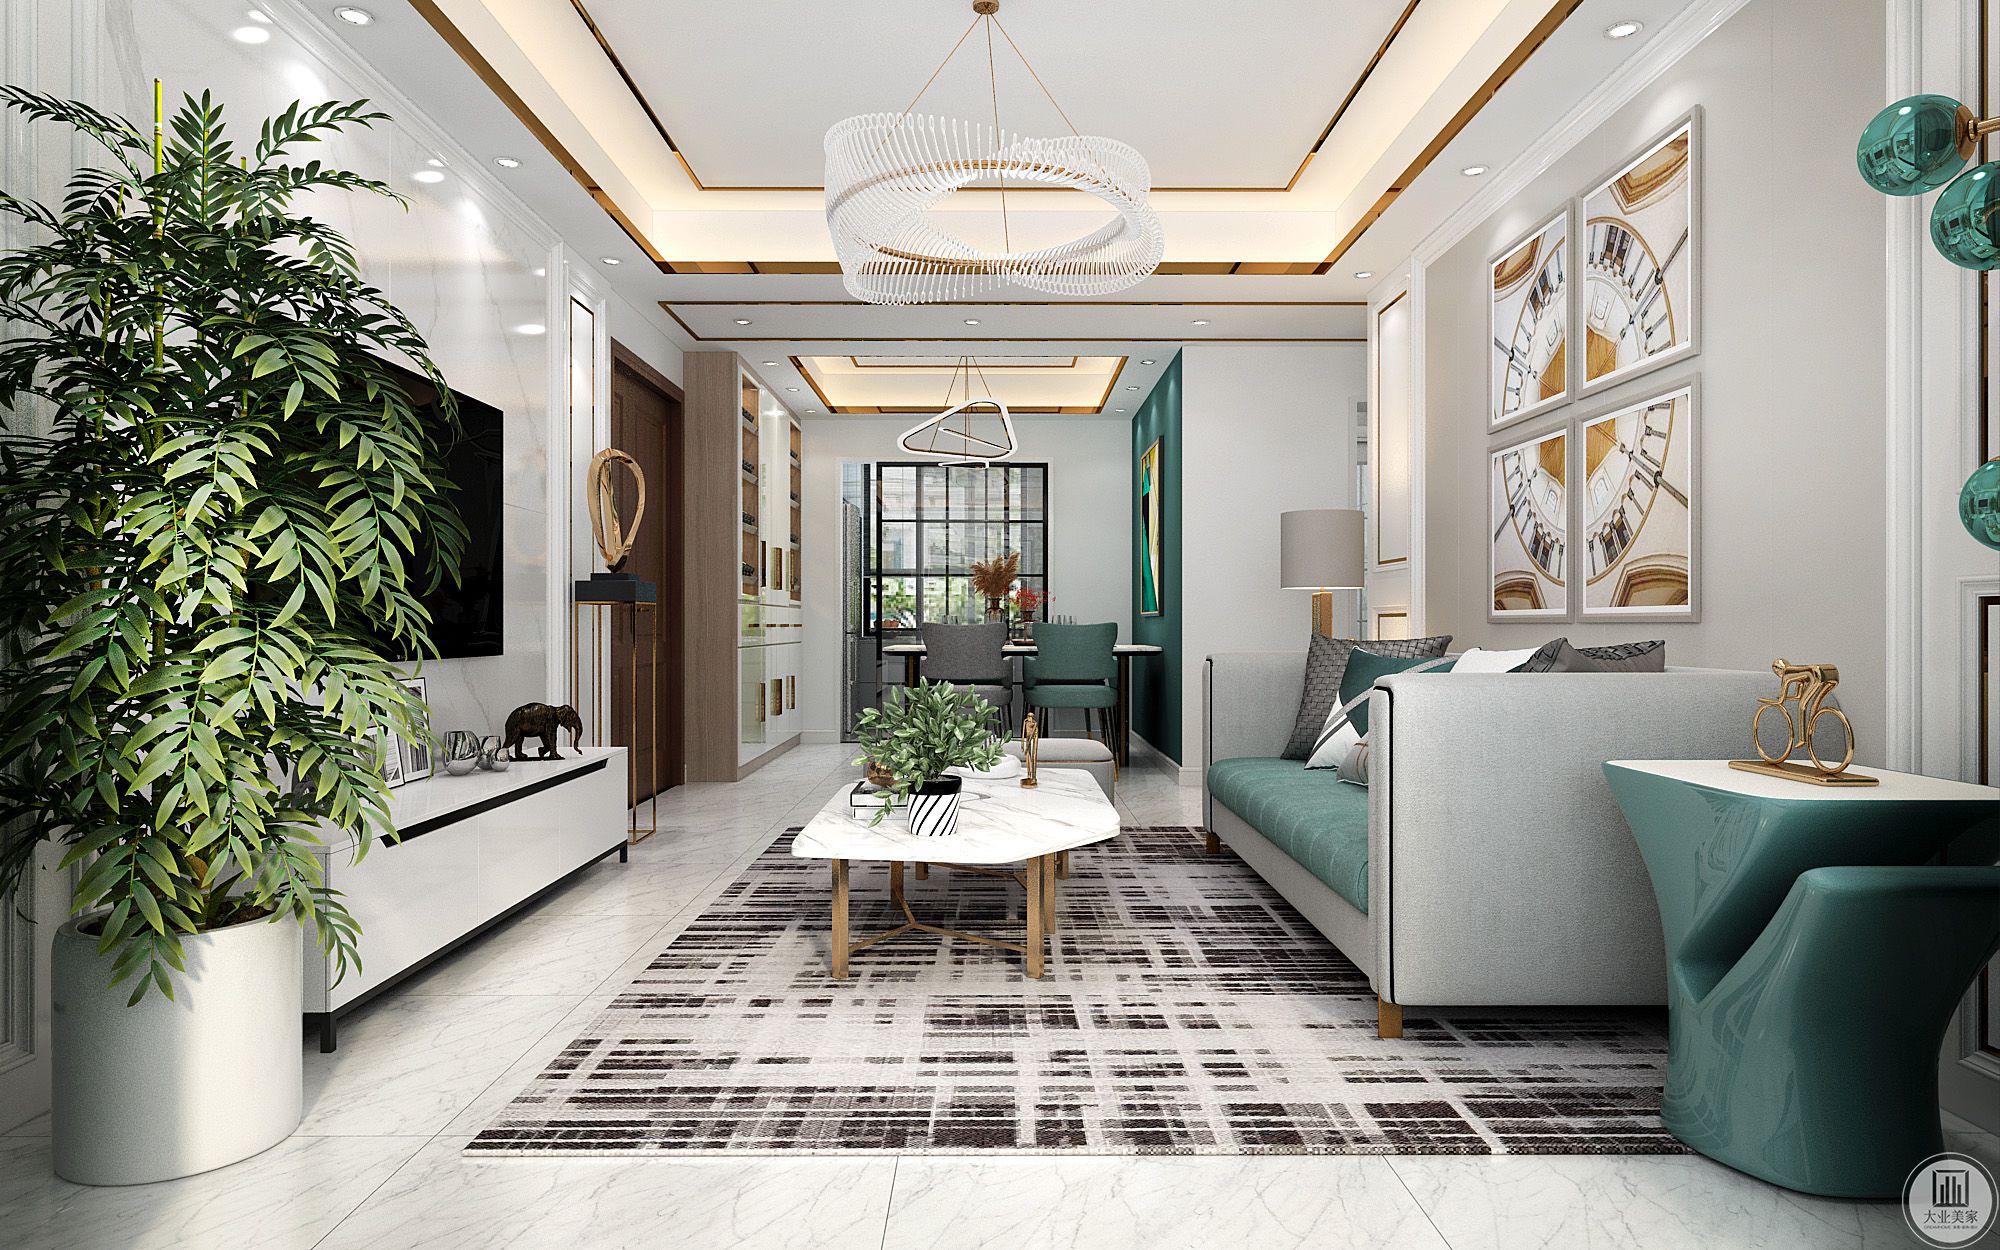 客厅以简洁的白色作底，夹杂着浅淡而温润的木色，梳理出了柔和而婉约的空间气质。